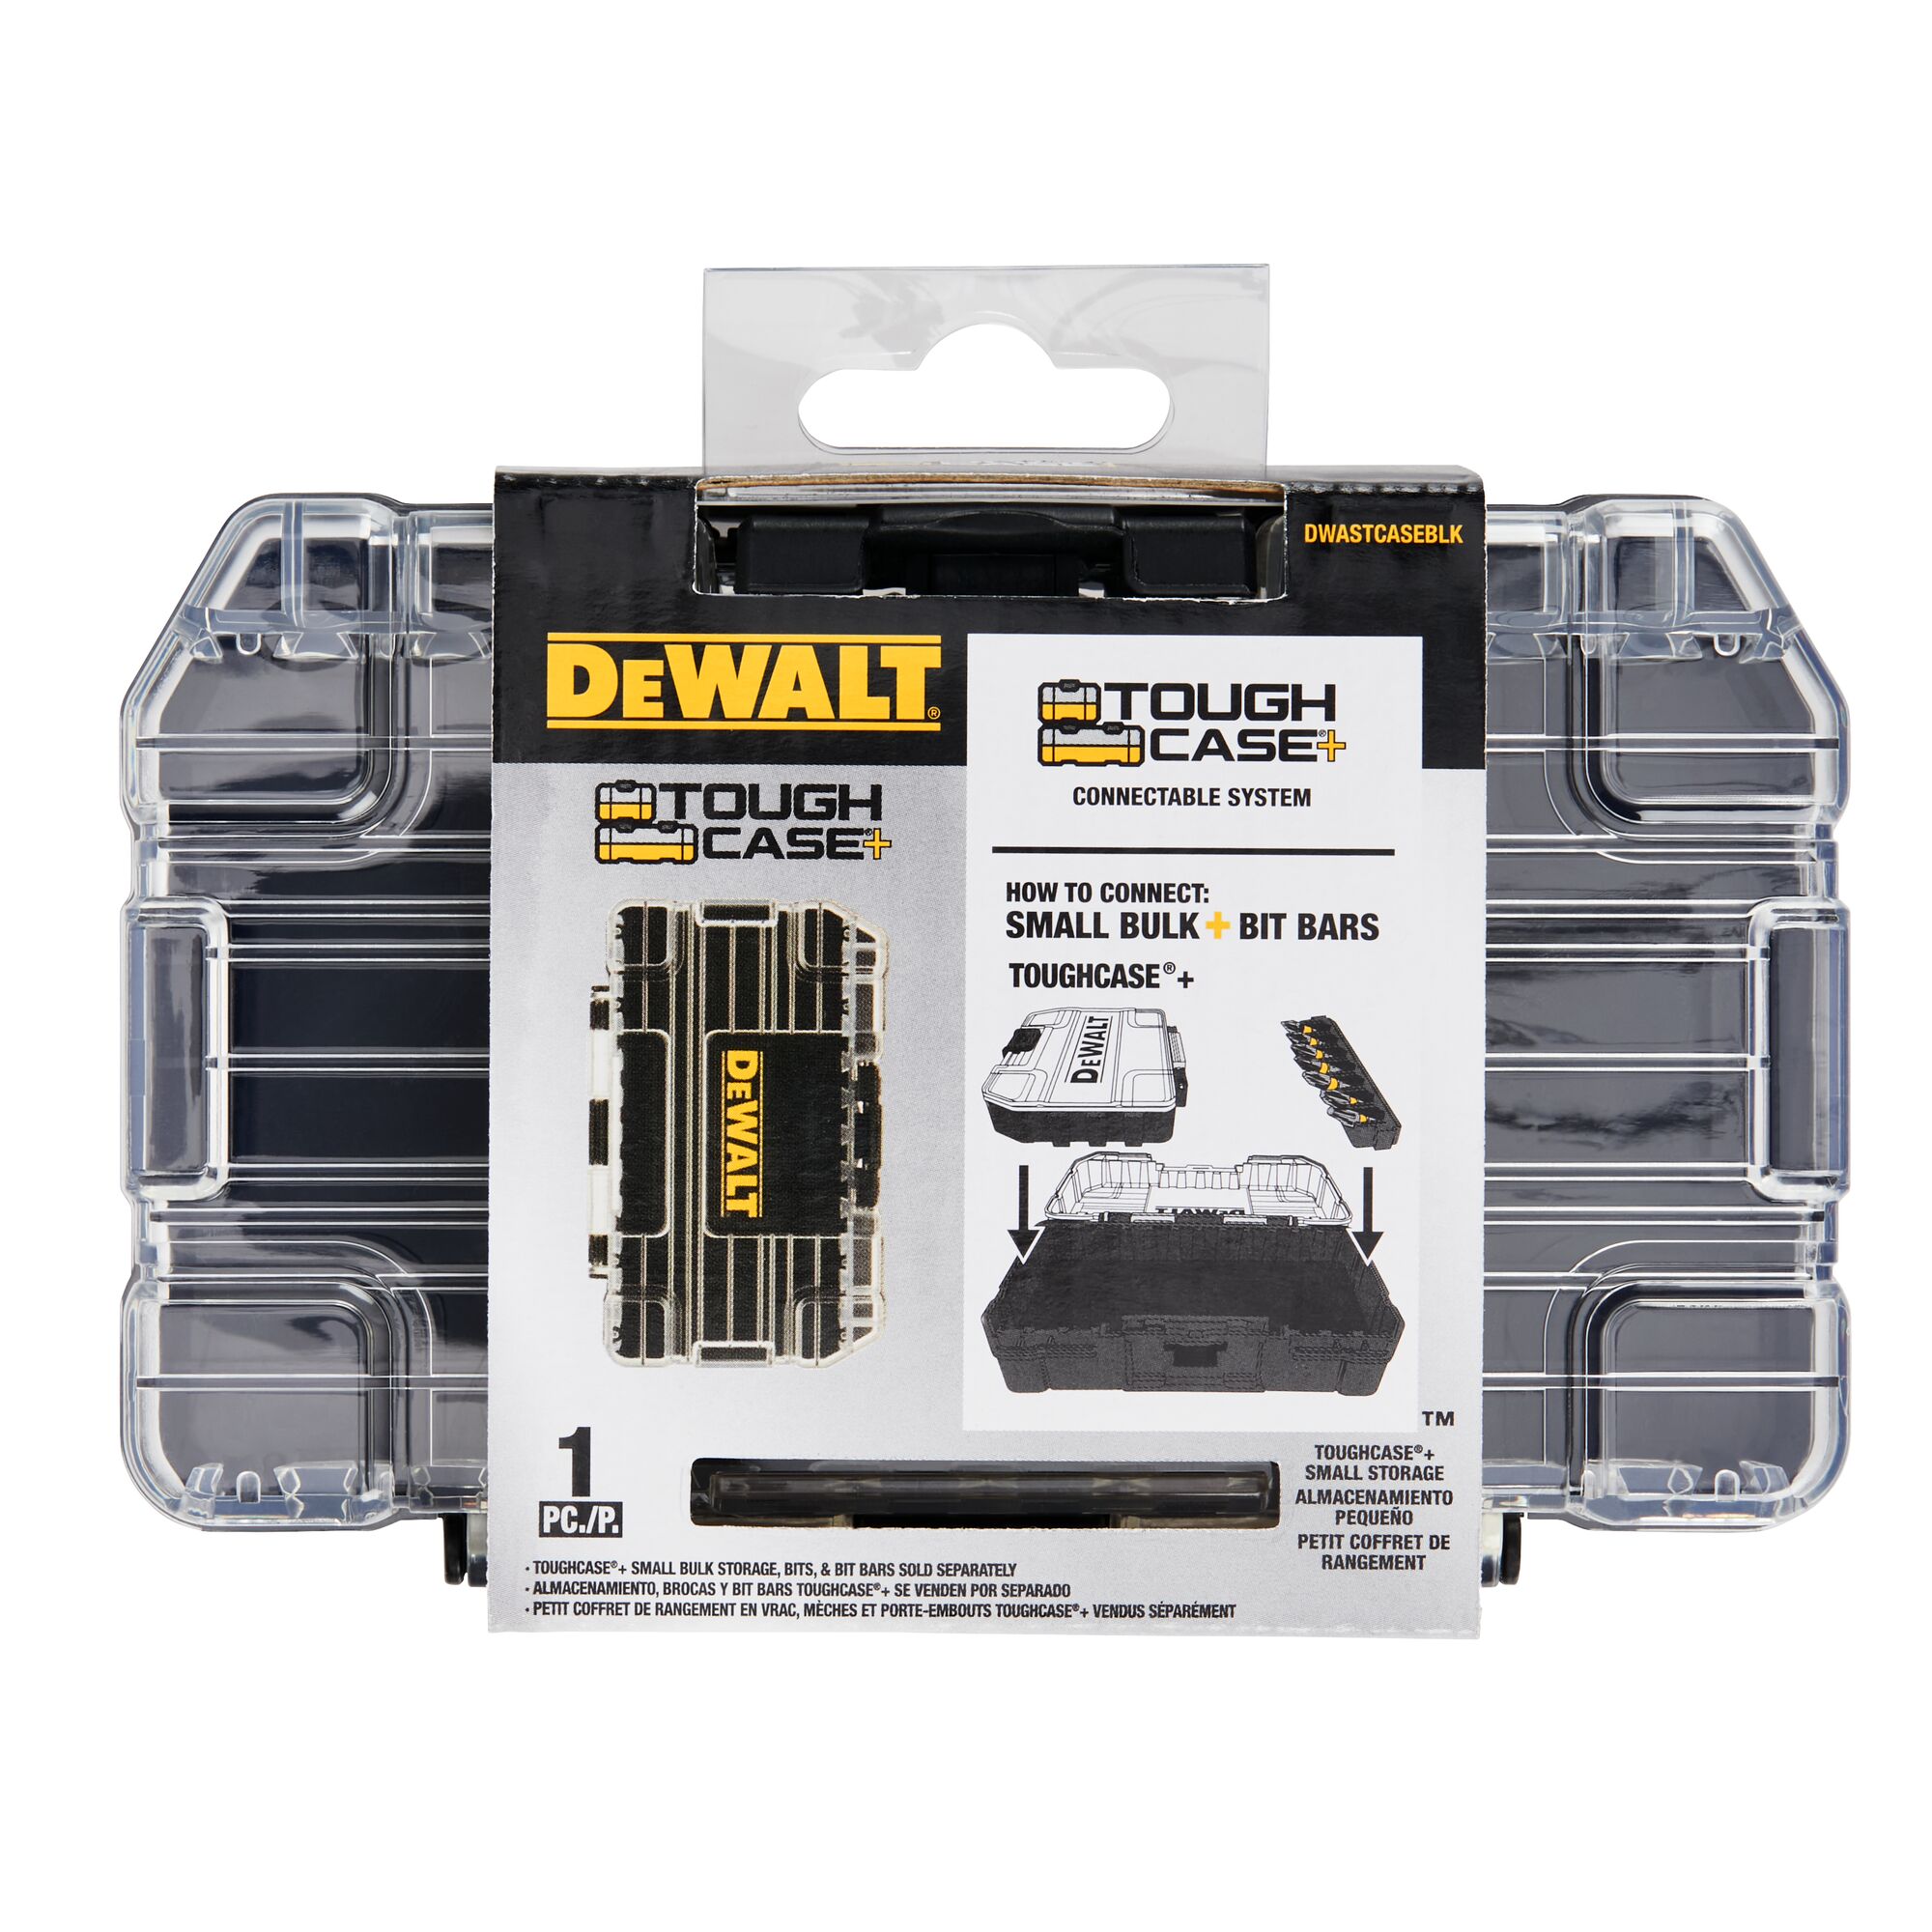 DeWALT Plastic Folding Tool Case Trolley for use with DeWalt